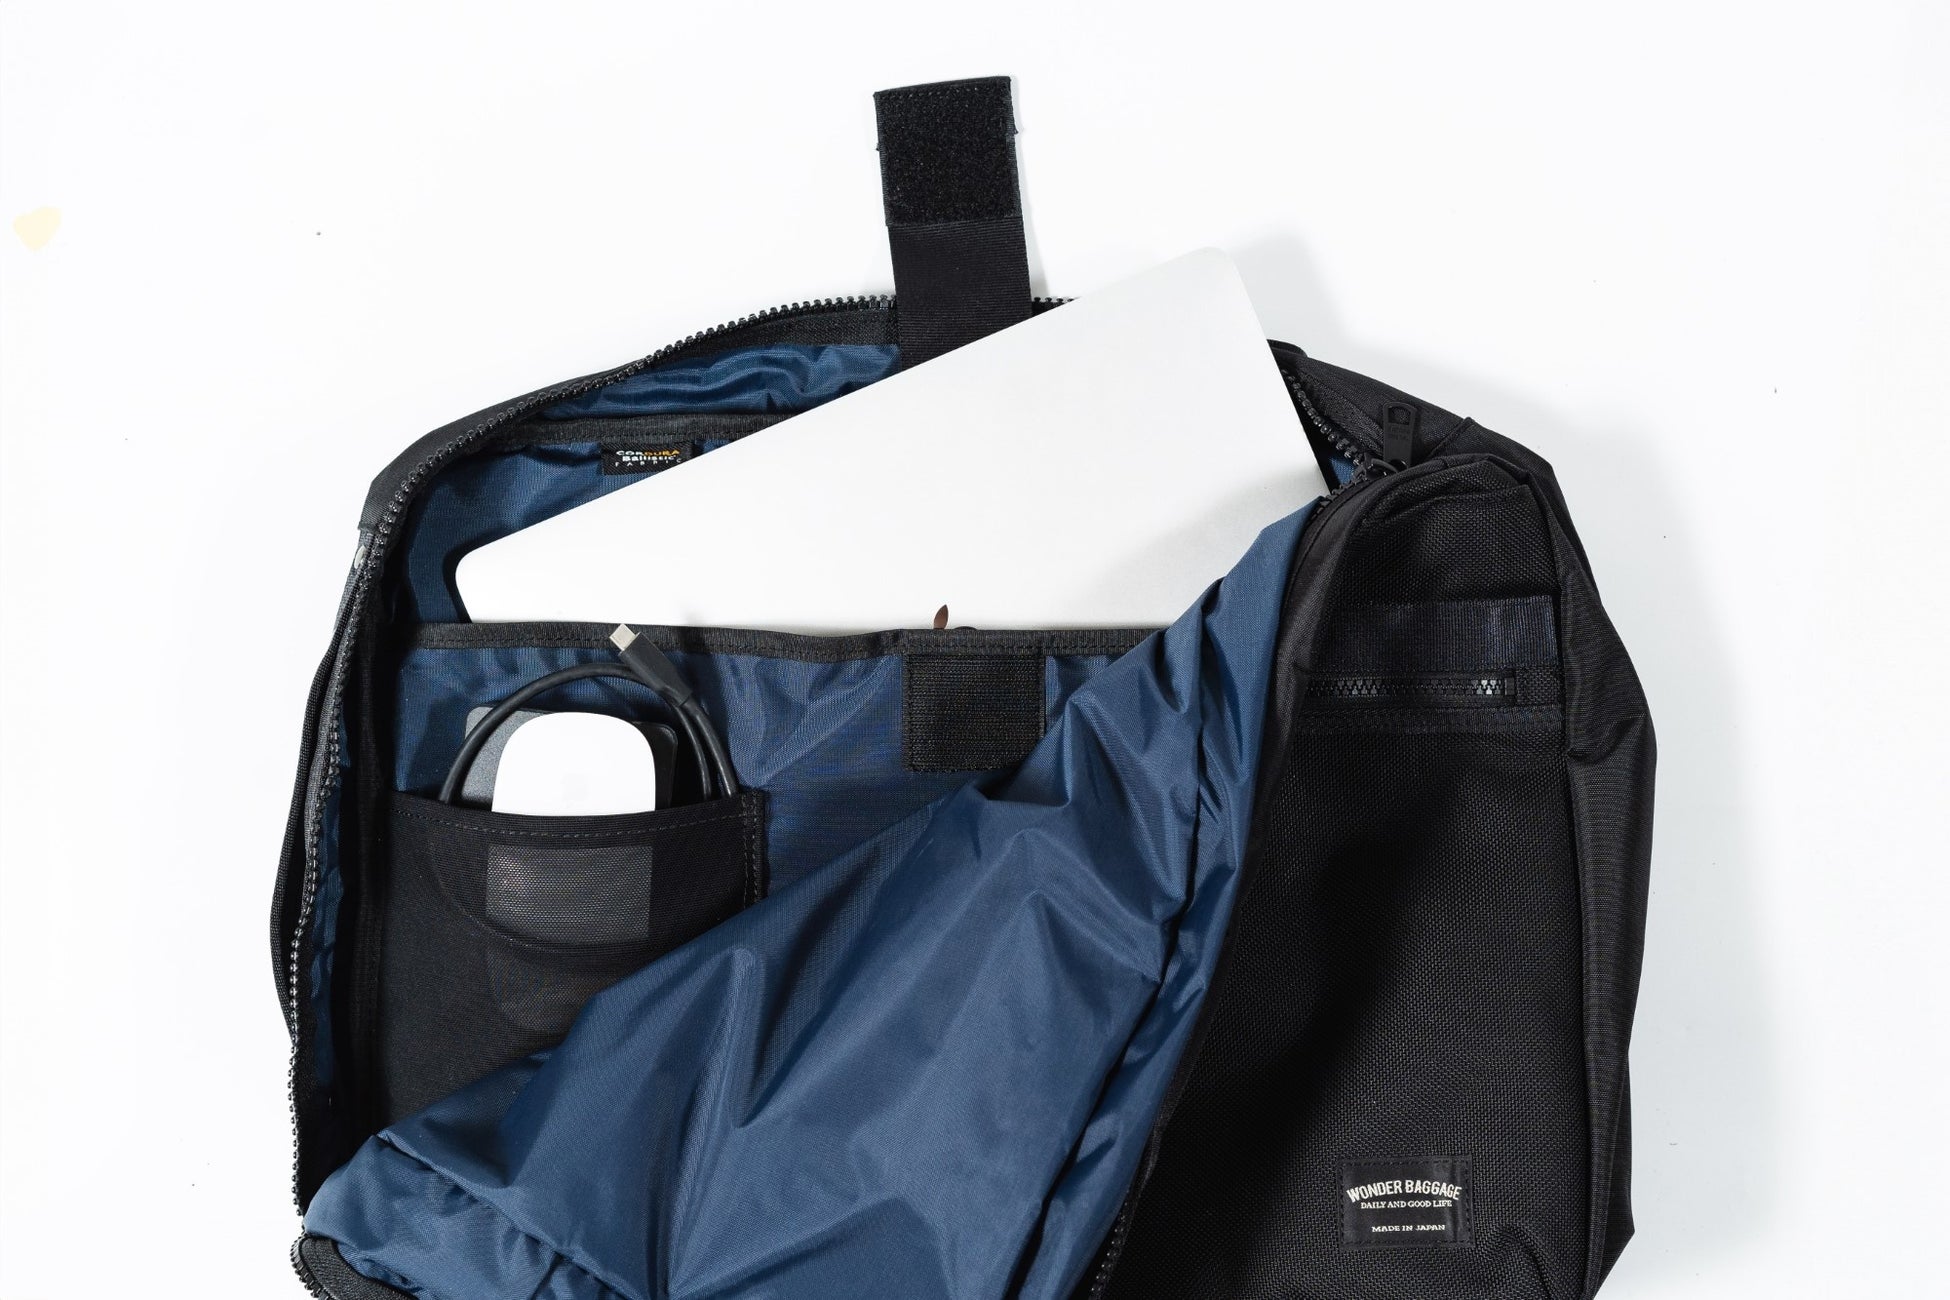 【新年度】ビジネスの相棒に防水バリスティックナイロンを使ったバッグ3型が「WONDER BAGGAGE」からリリース